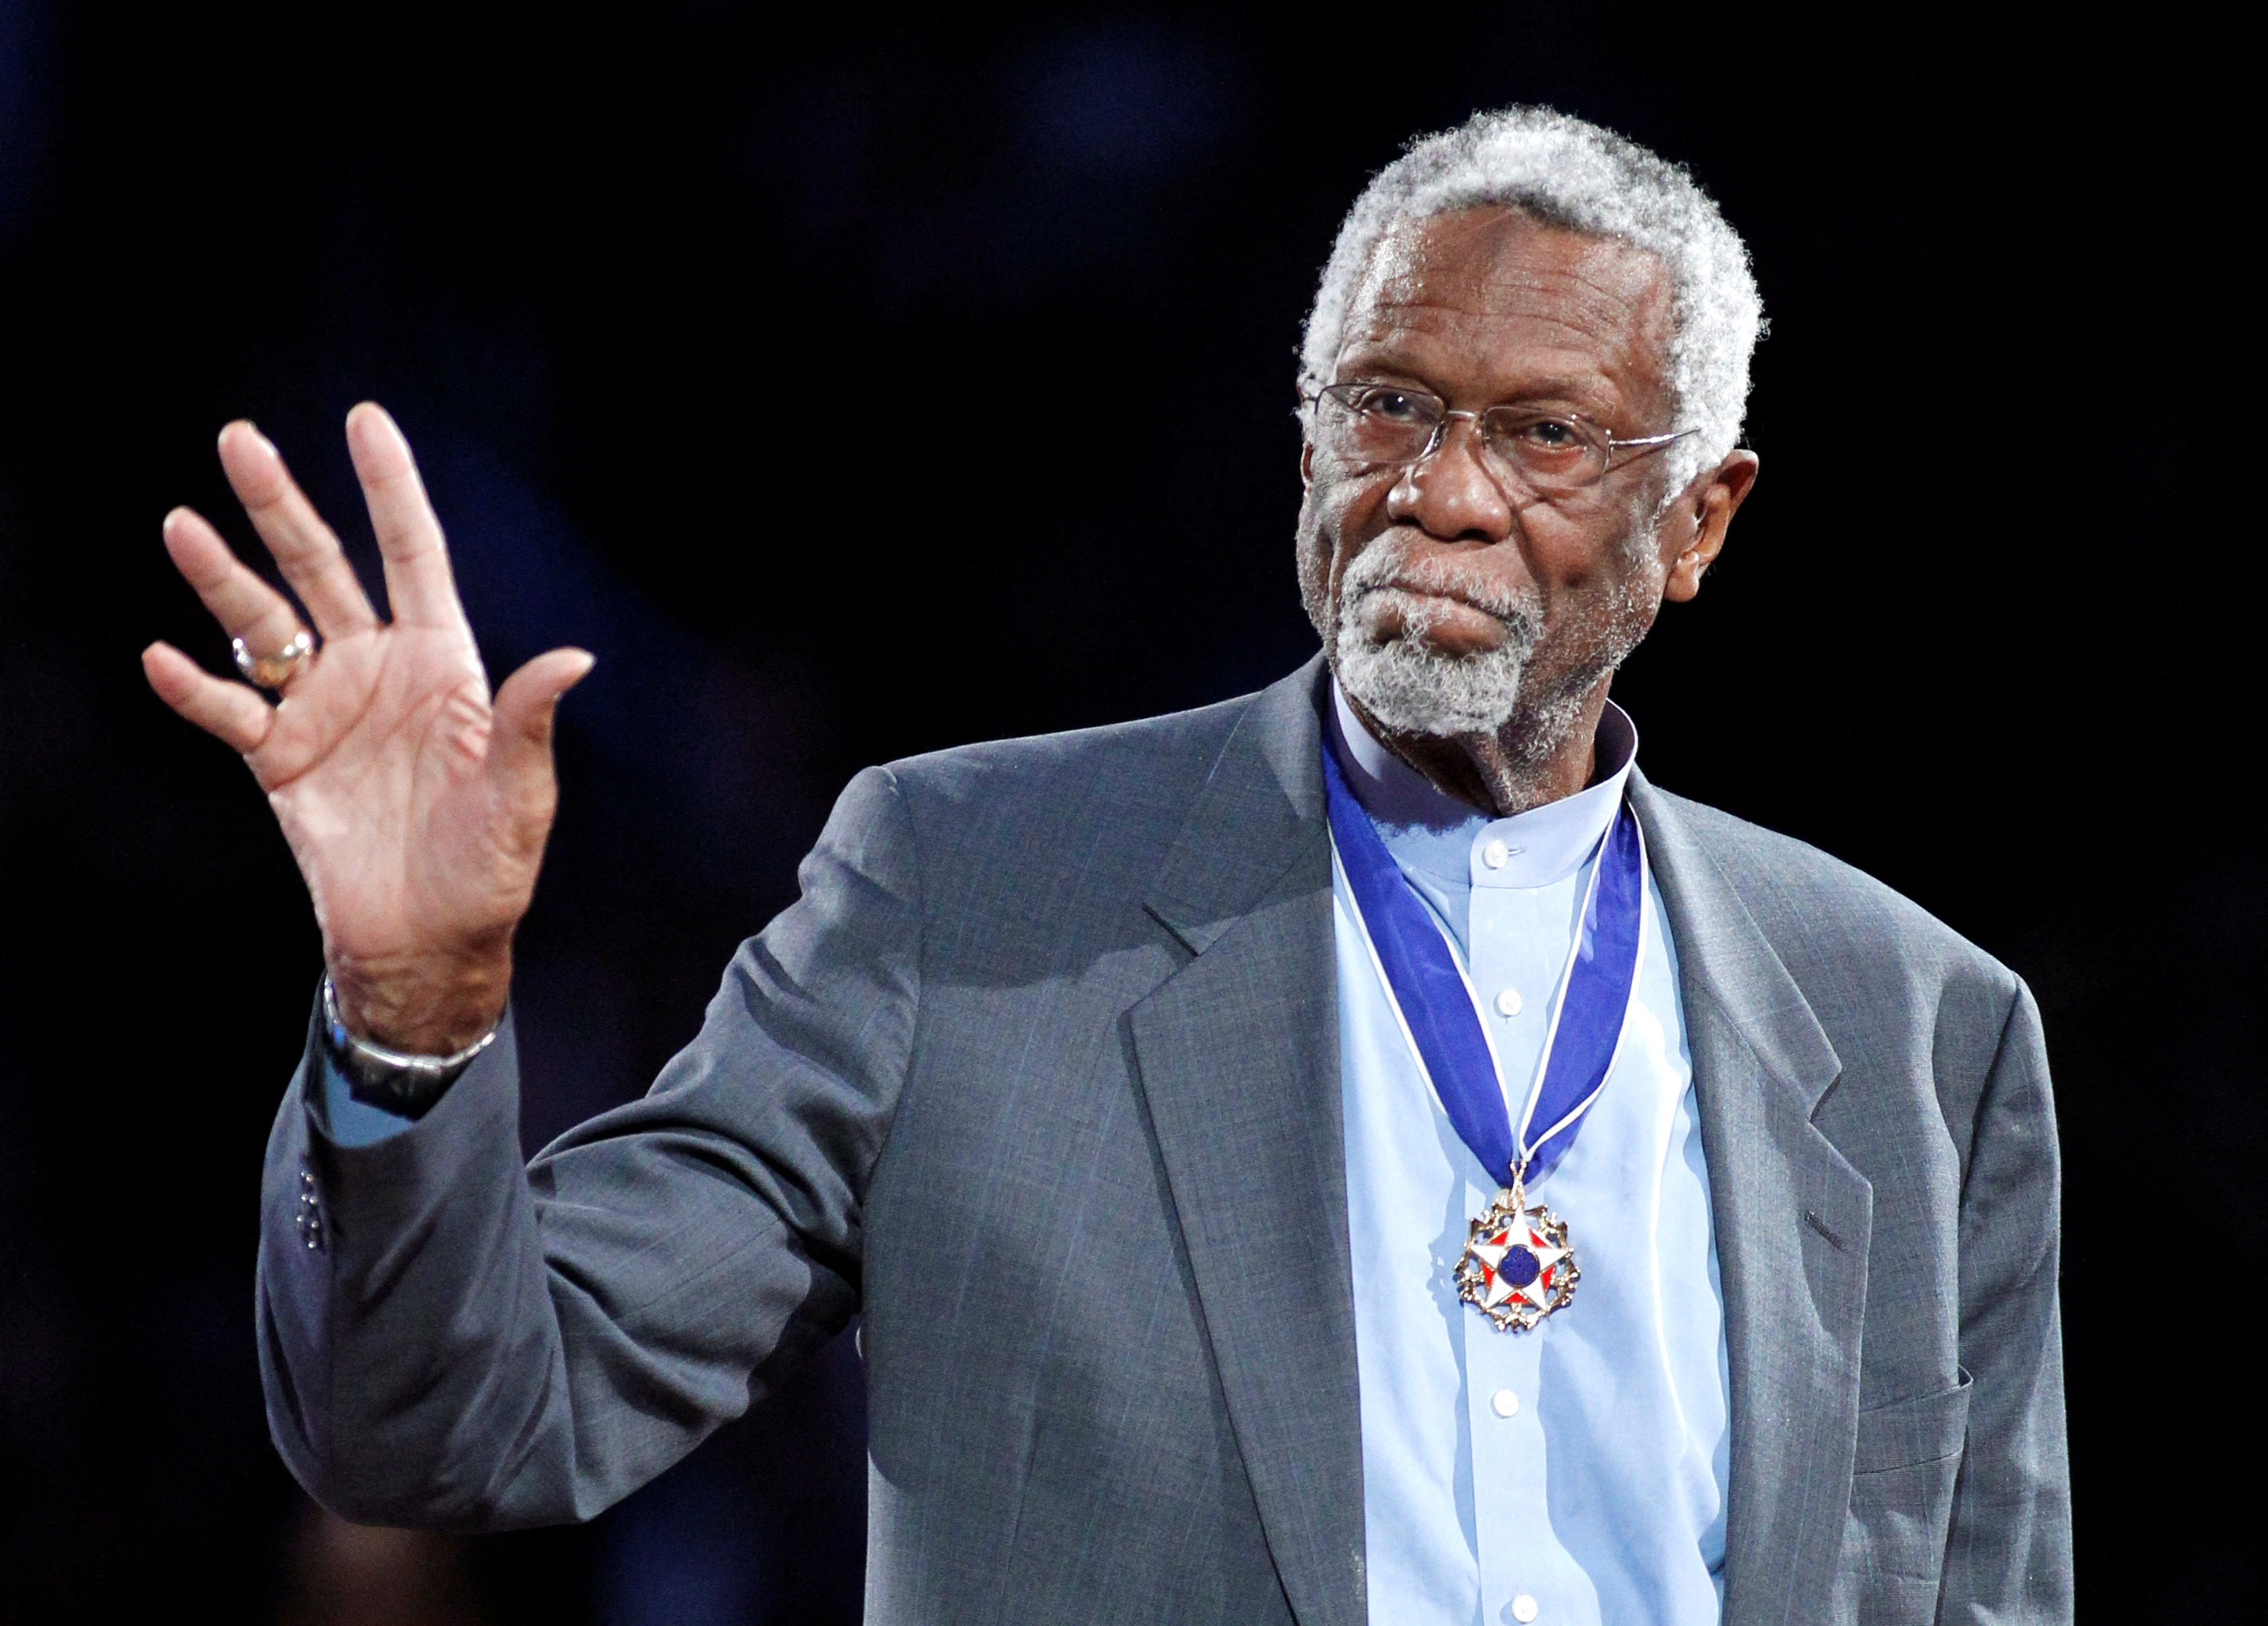 Murió la estrella del baloncesto Bill Russell a los 88 años: fue once veces campeón de la NBA